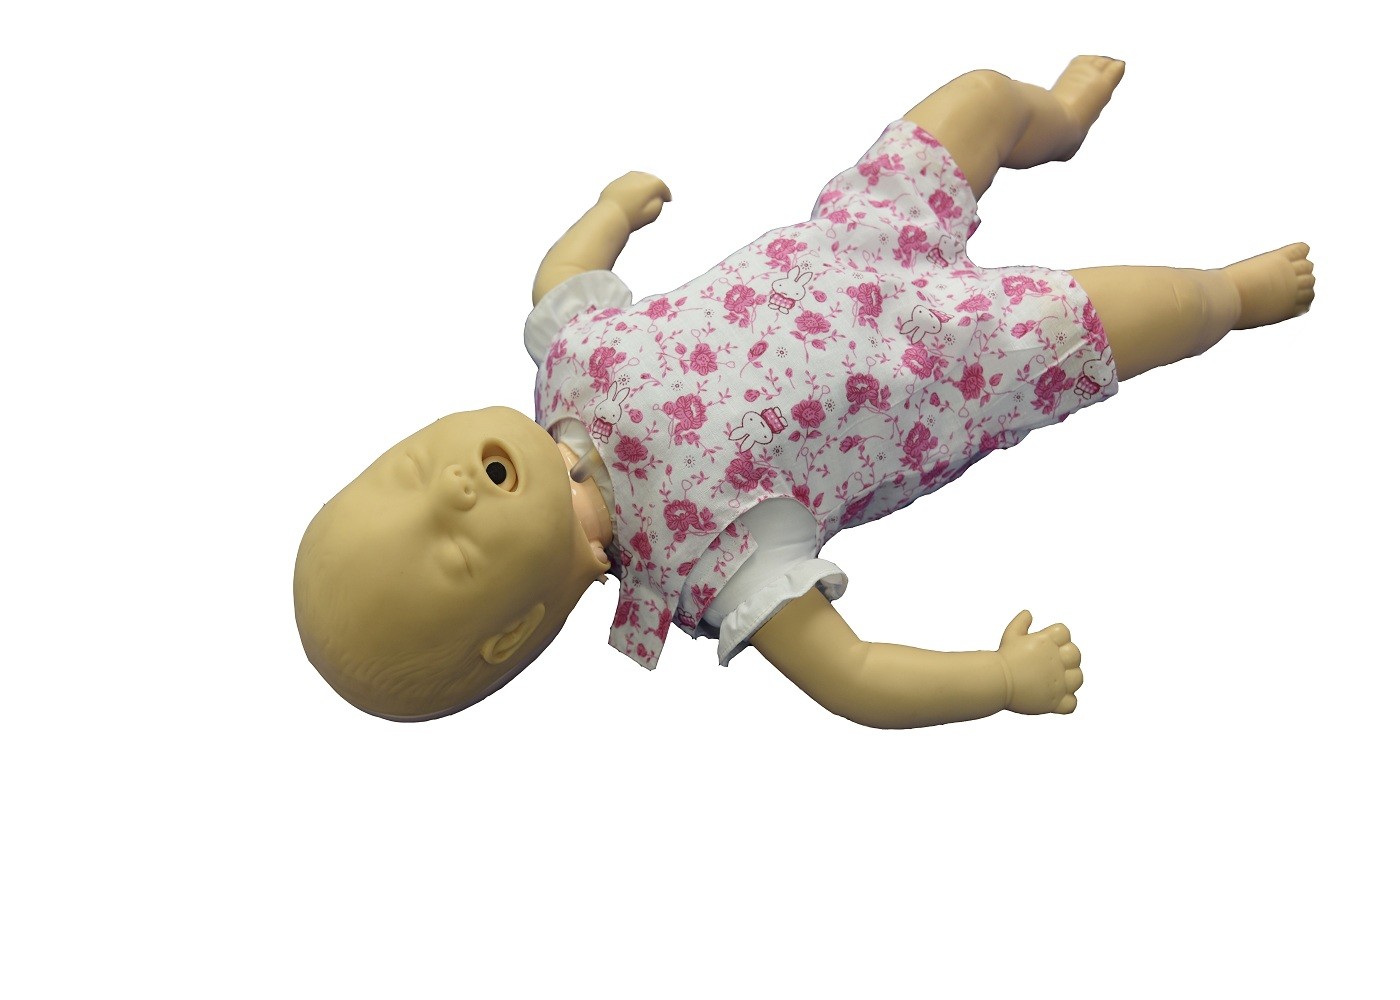 Acil Durumda CPR Opeartion ve Hava Yolu Obstrüksiyonu ile Pediatrik Simülasyon Manikini